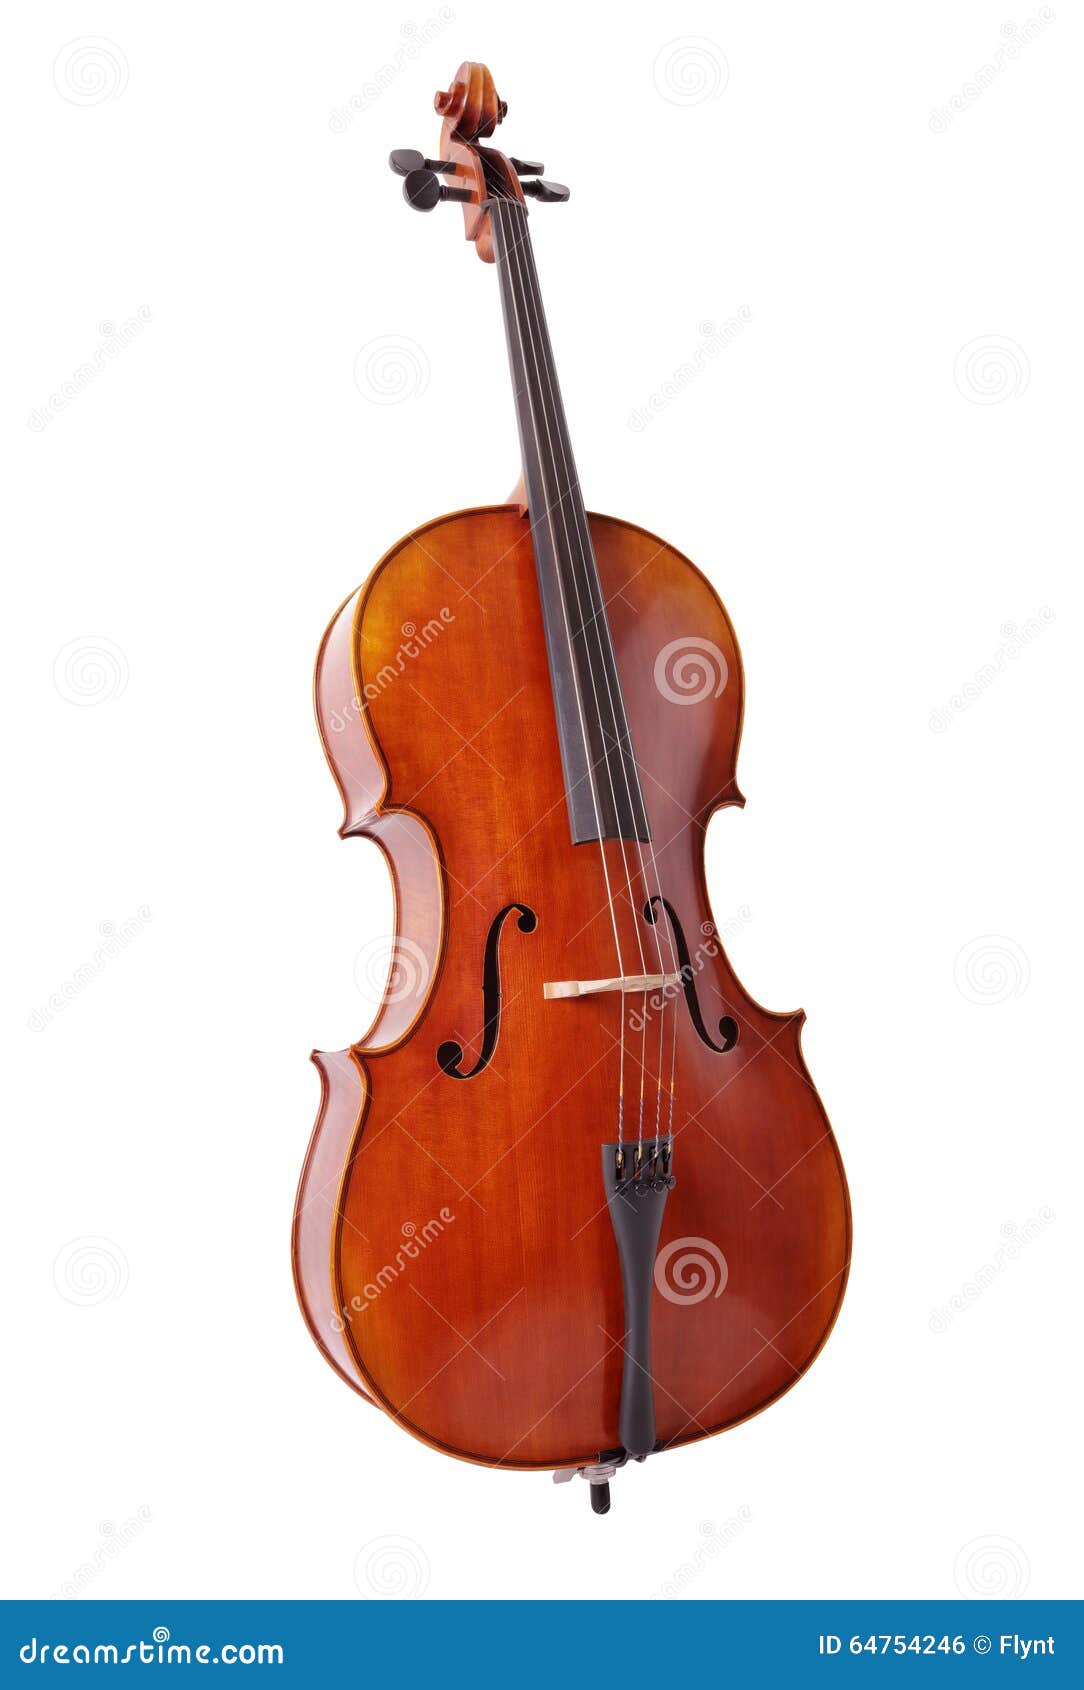 cello  on white background